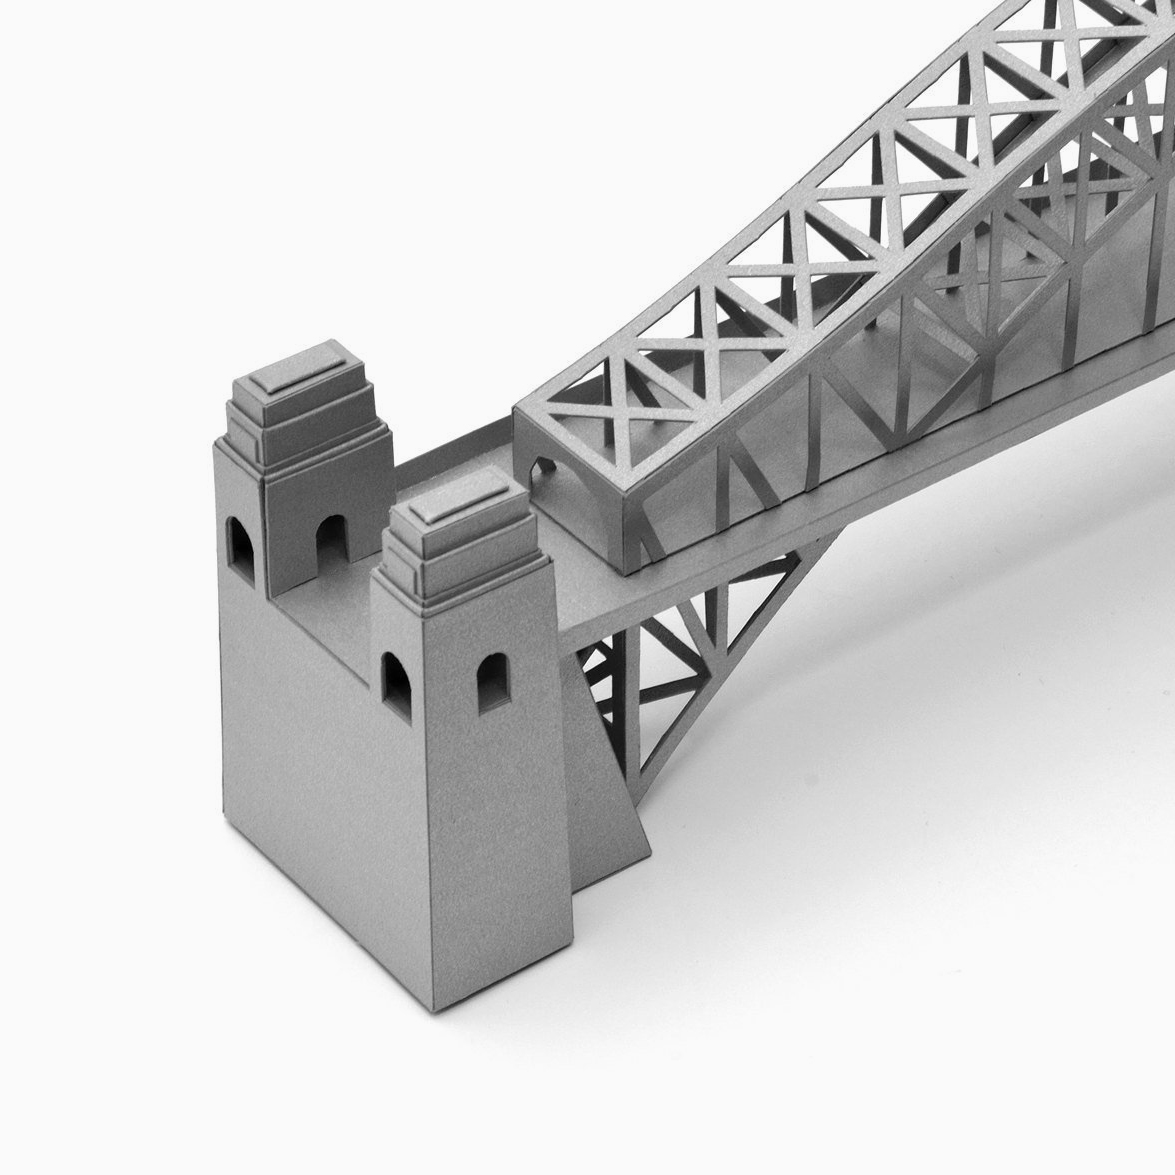 Sydney Harbour Bridge Paper Model by PaperLandmarks Detail Closeup